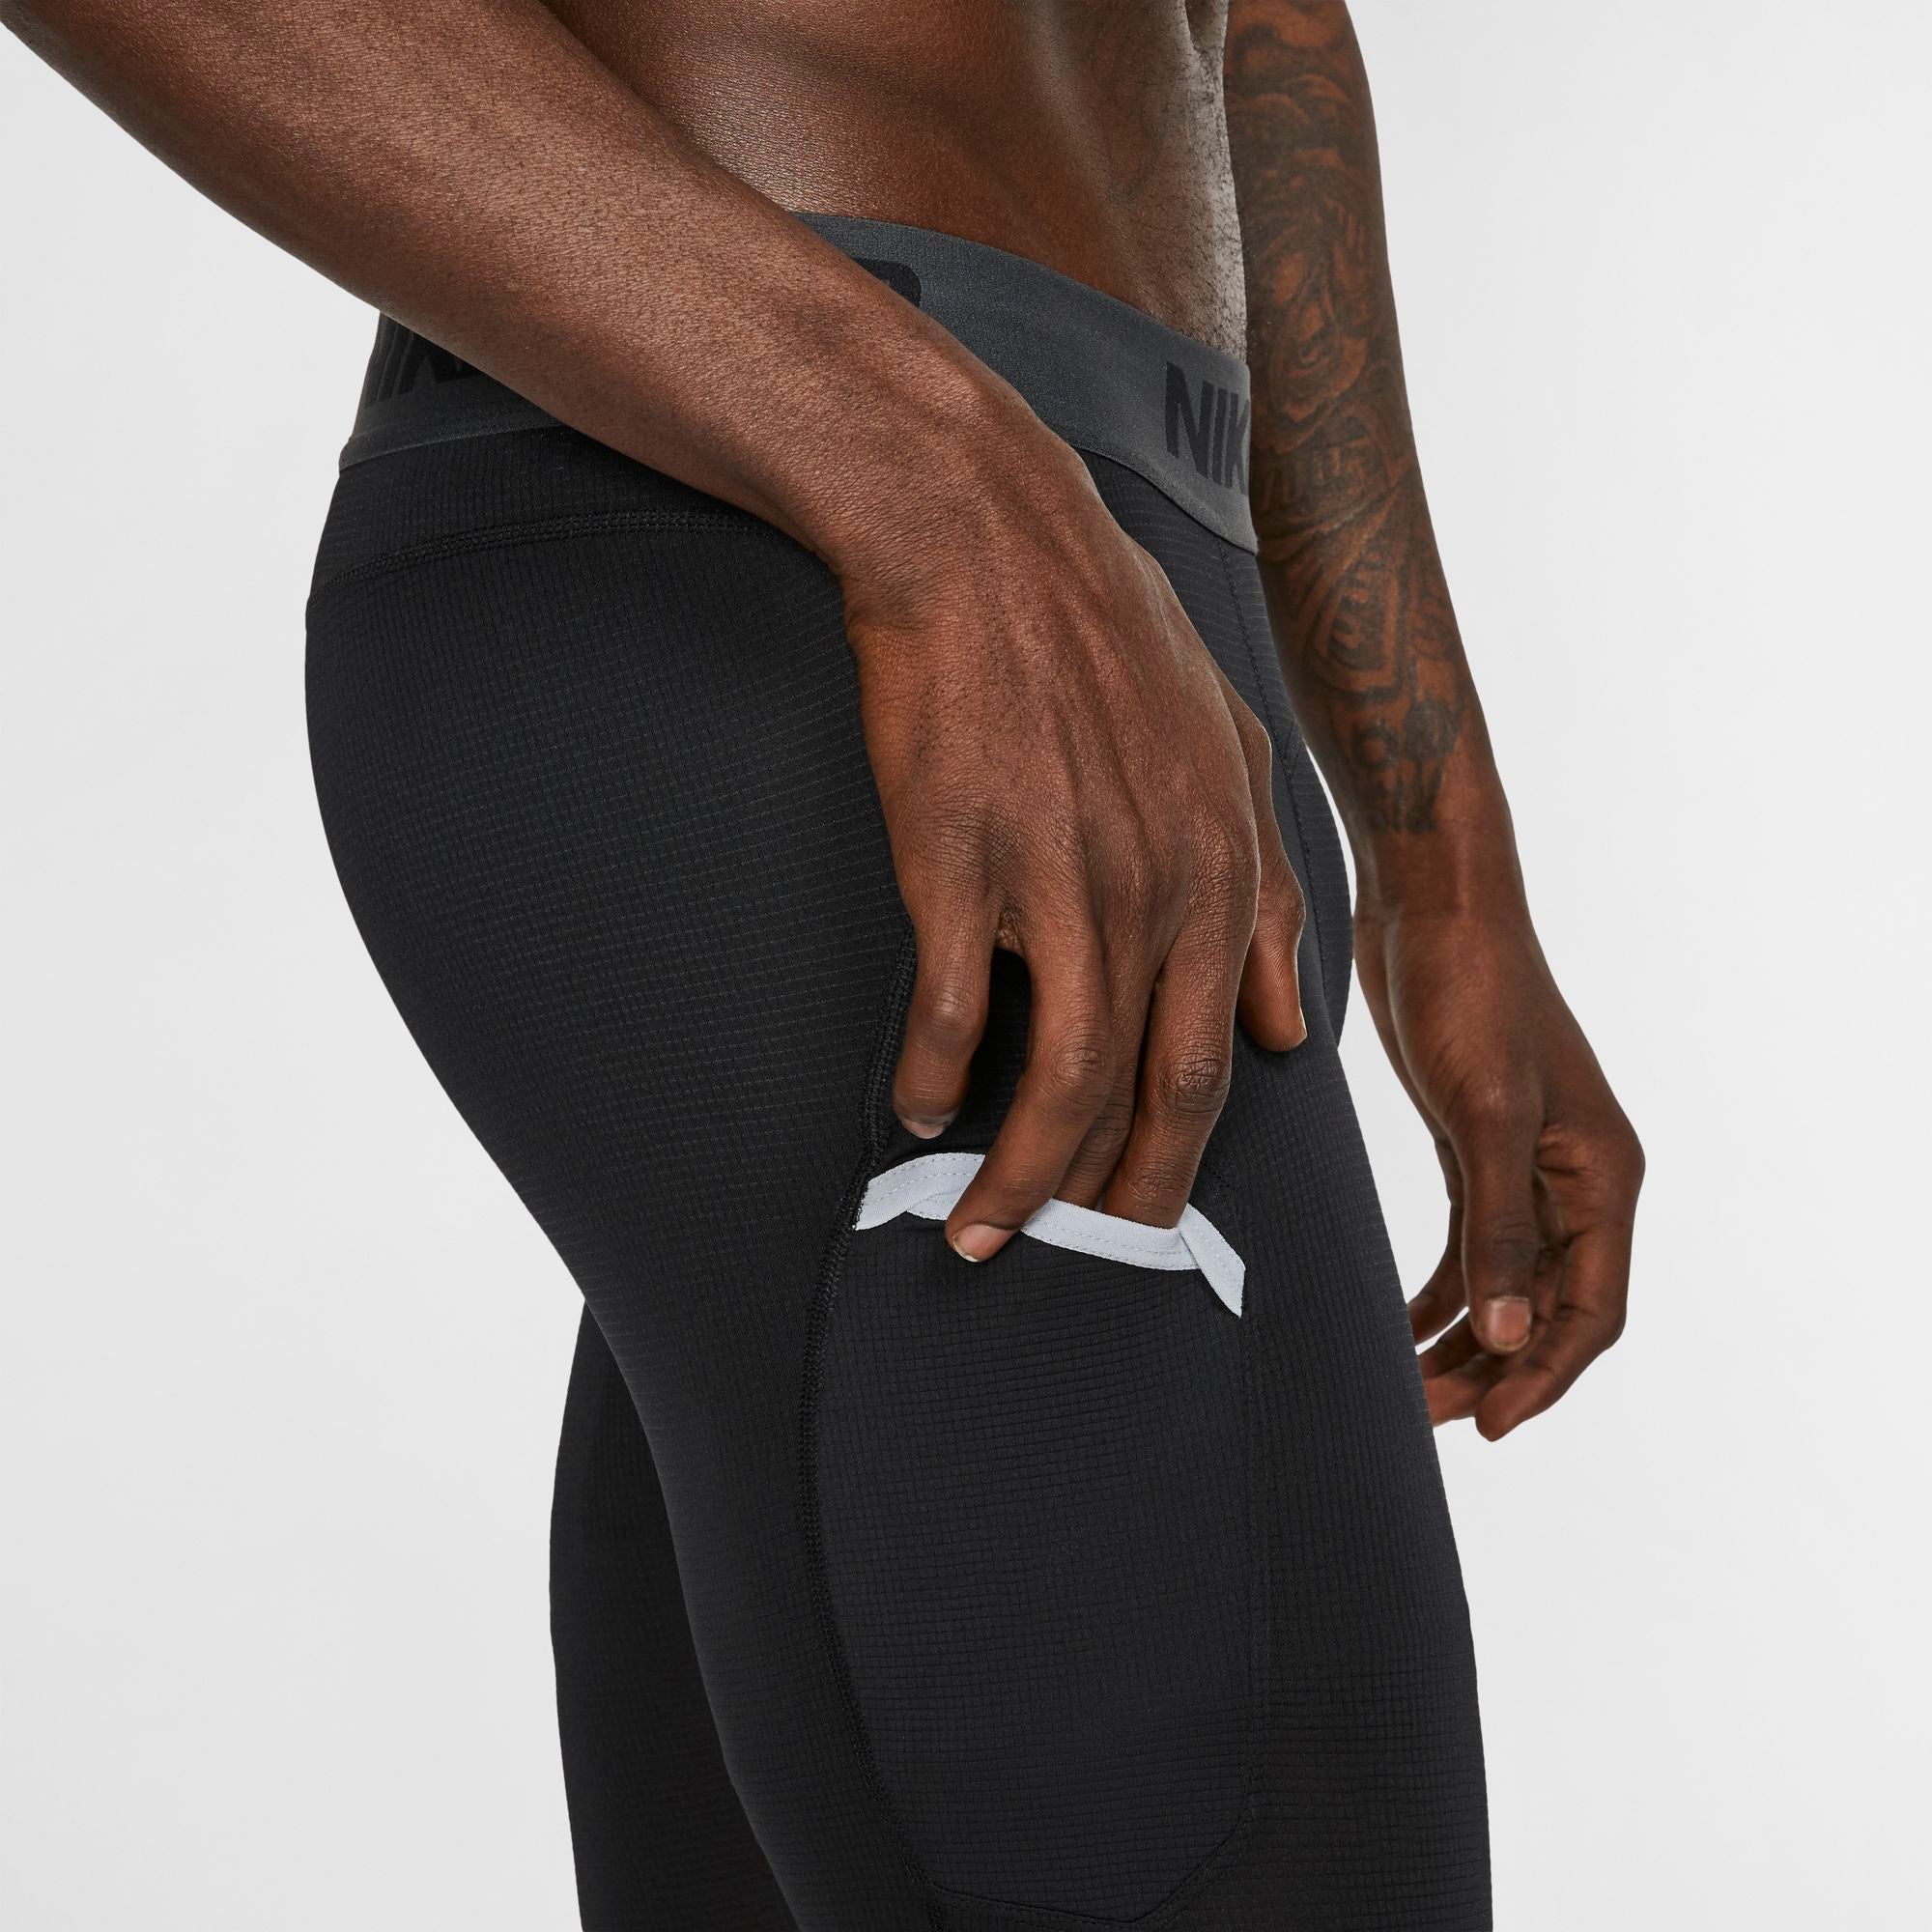  Nike Men's Pro Compression 3/4 Tights (Small) Black